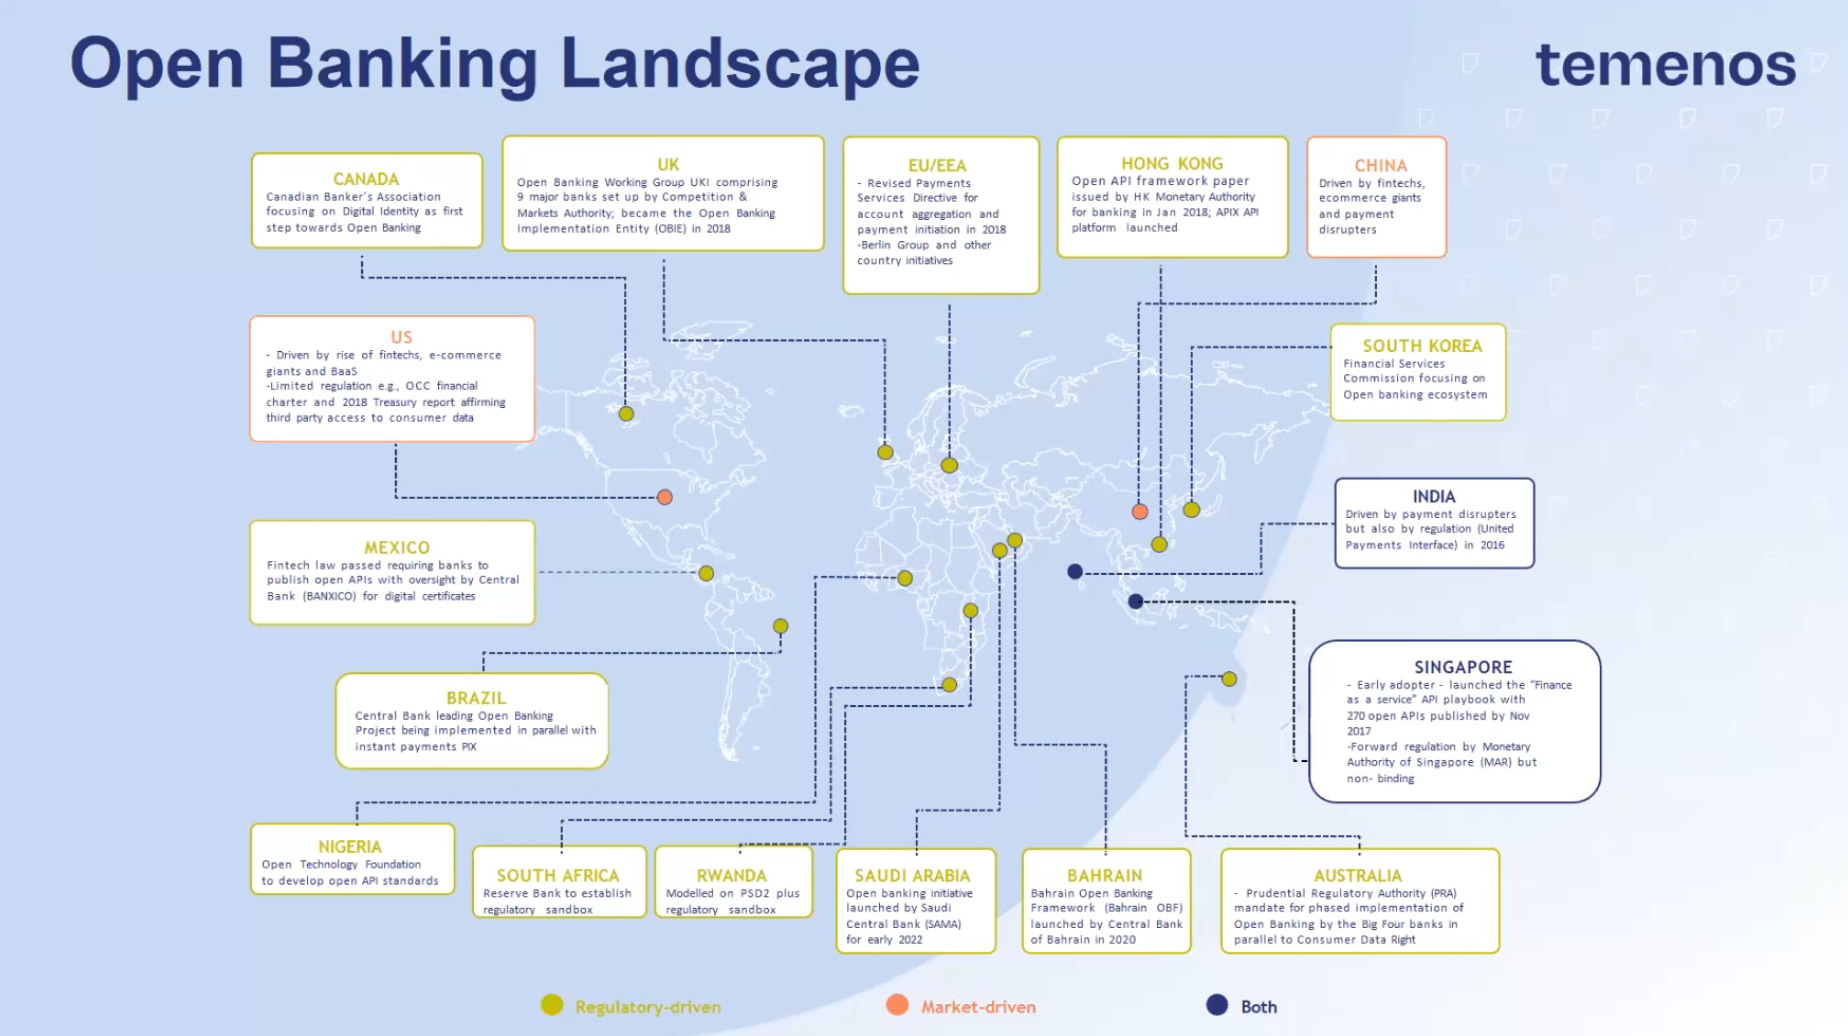 Open banking around the world, Source: Temenos